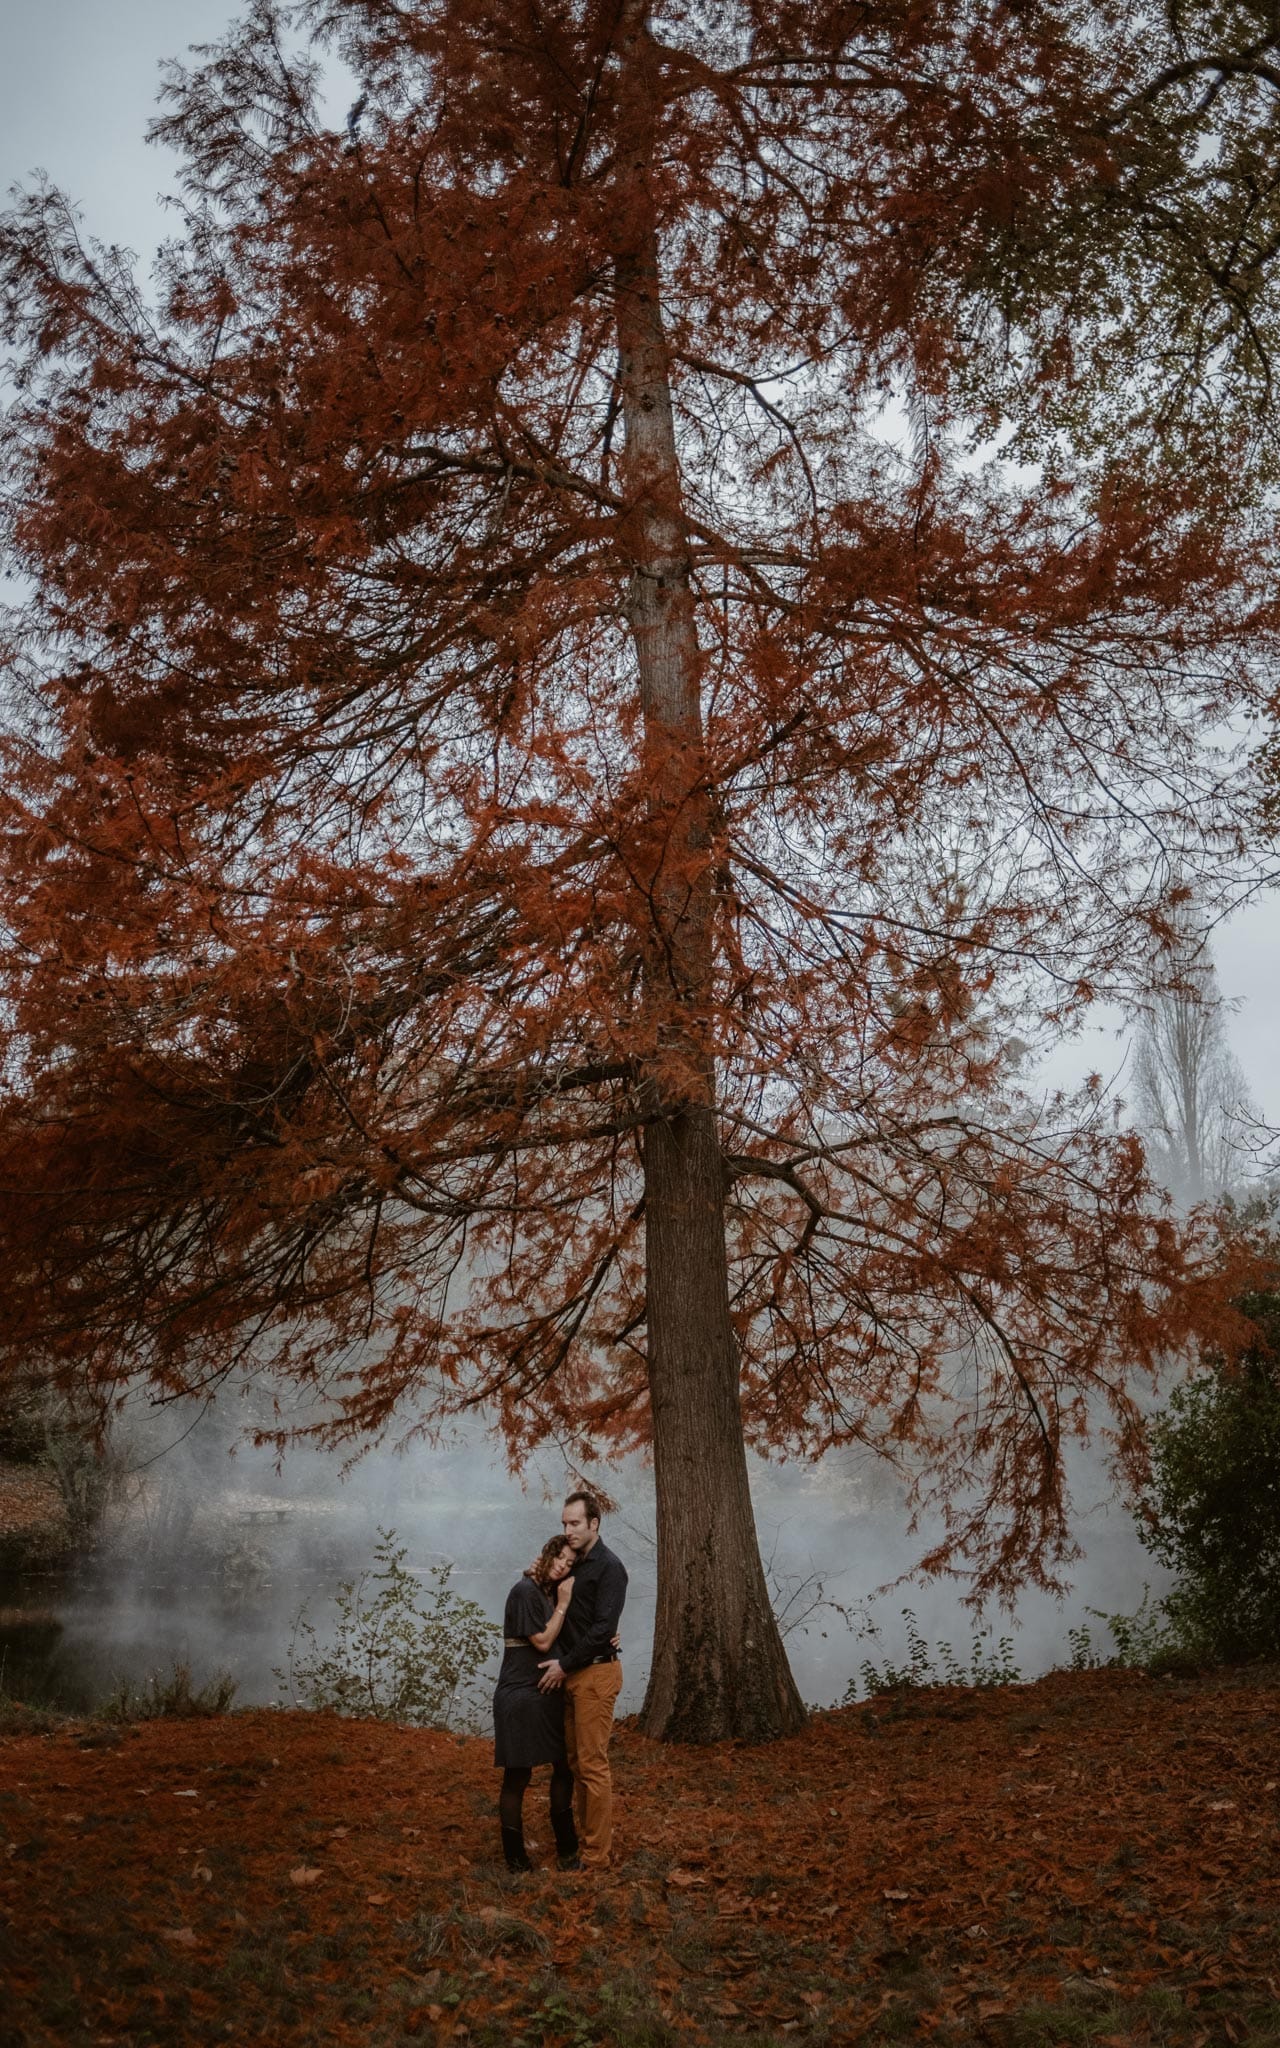 Séance photo de grossesse et futurs parents en extérieur, à l’ambiance poétique, en forêt à l’automne près de Clisson par Geoffrey Arnoldy photographe